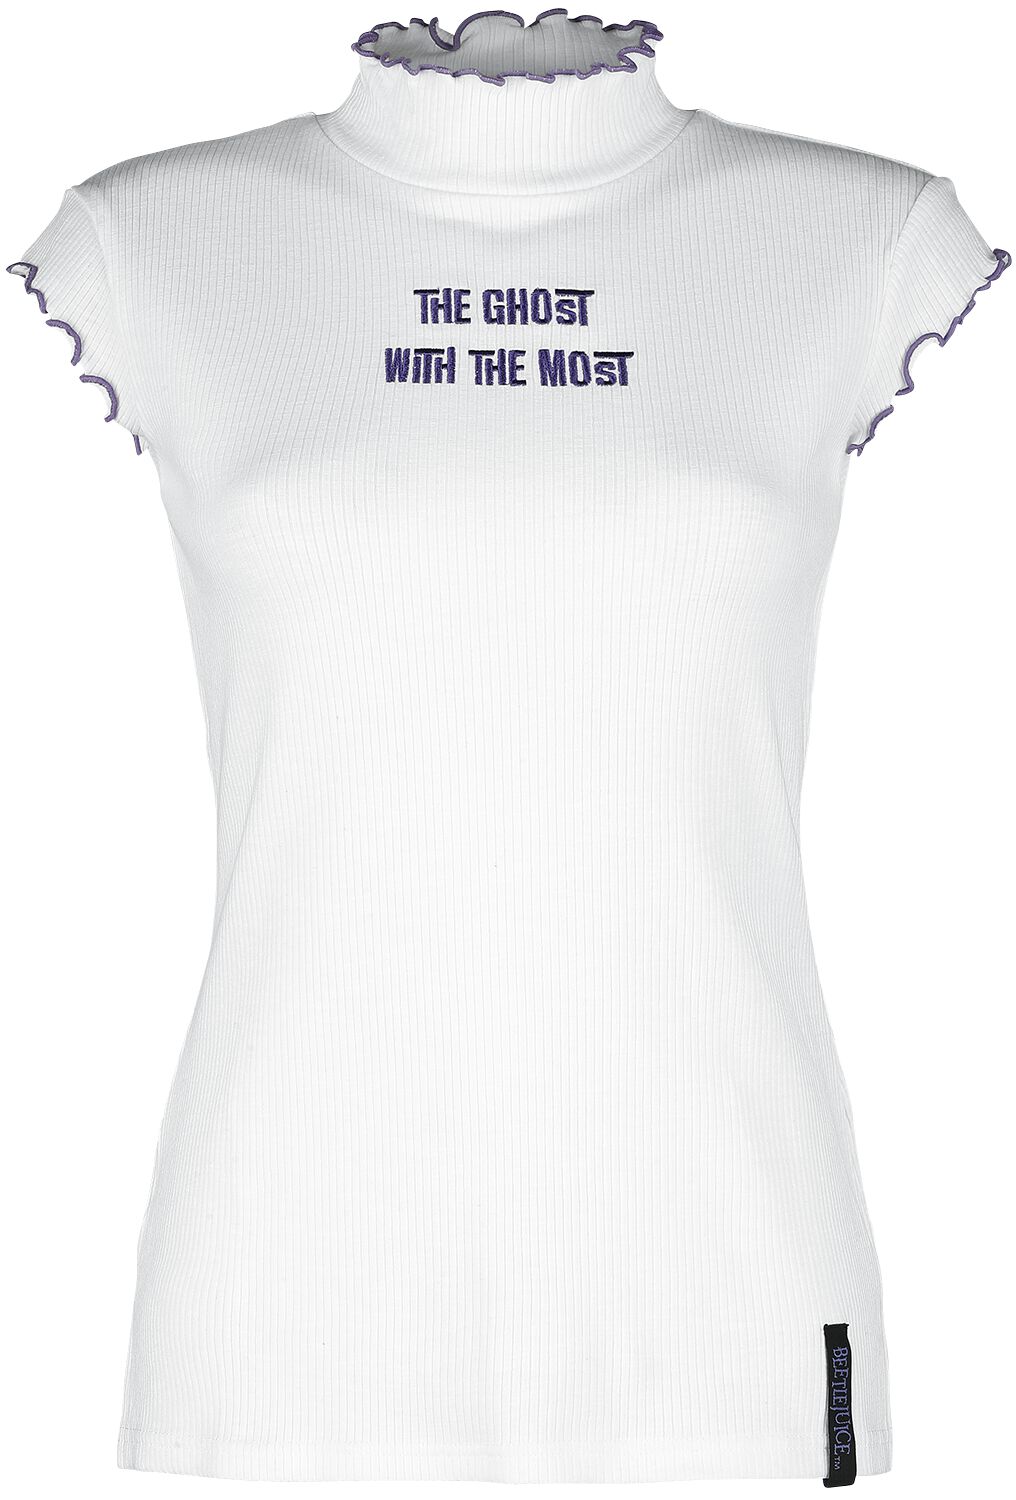 Beetlejuice T-Shirt - Ghost With The Most - XS bis XXL - für Damen - Größe XS - weiß  - EMP exklusives Merchandise!